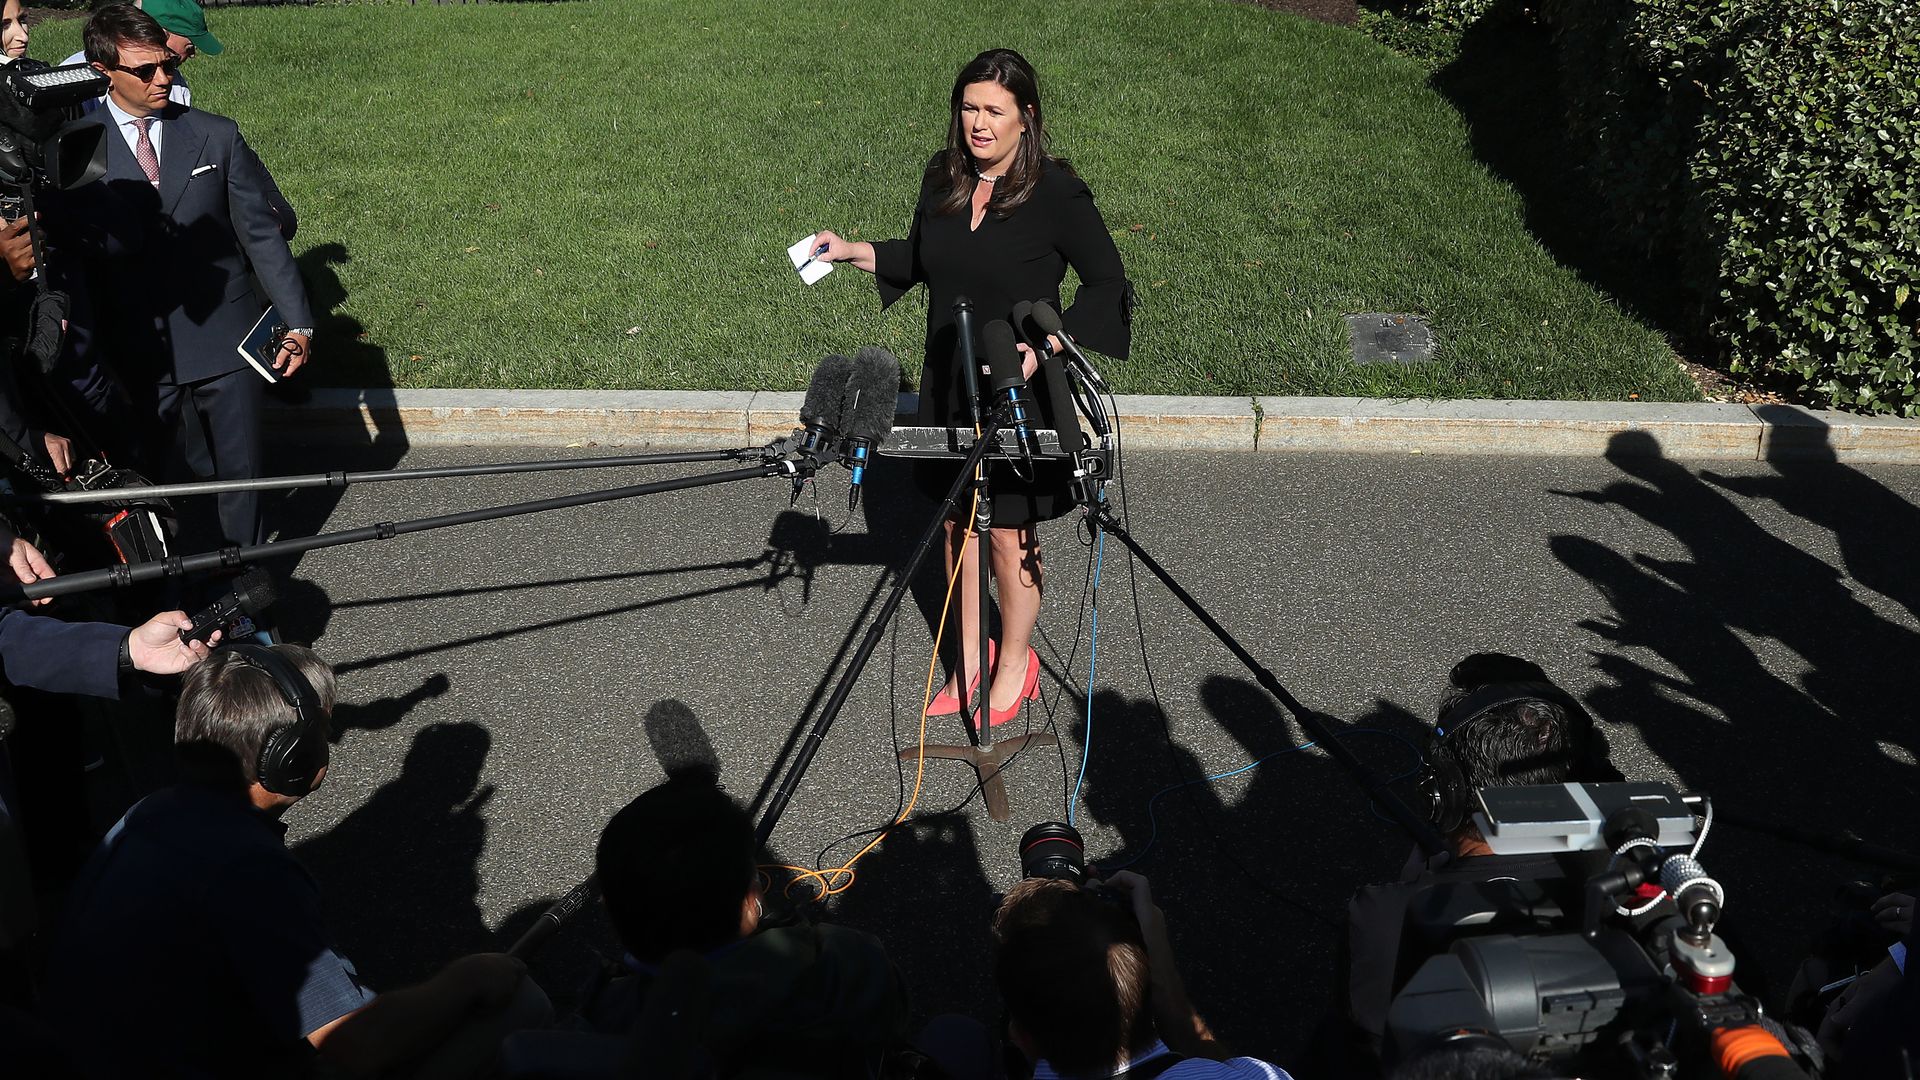 Outgoing press secretary Sarah Huckabee Sanders